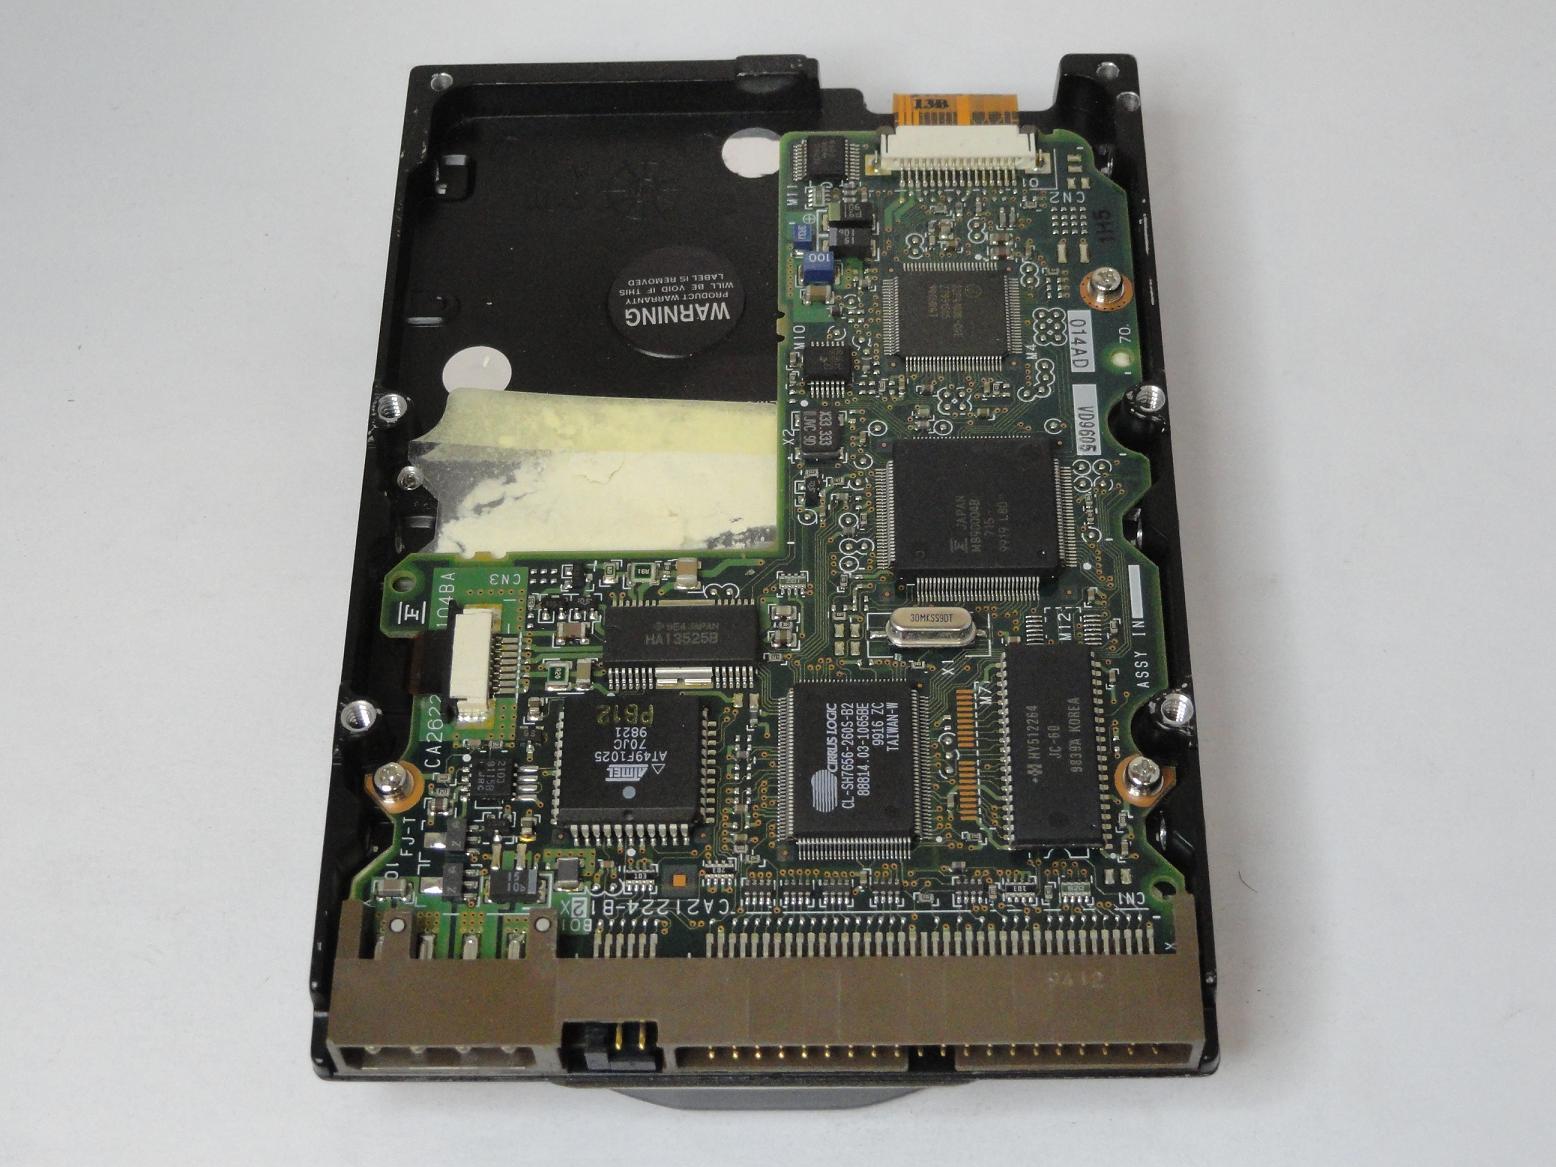 MC4350_CA01675-B321000E_Fujitsu 3.2GB IDE 5400rpm 3.5in HDD - Image2